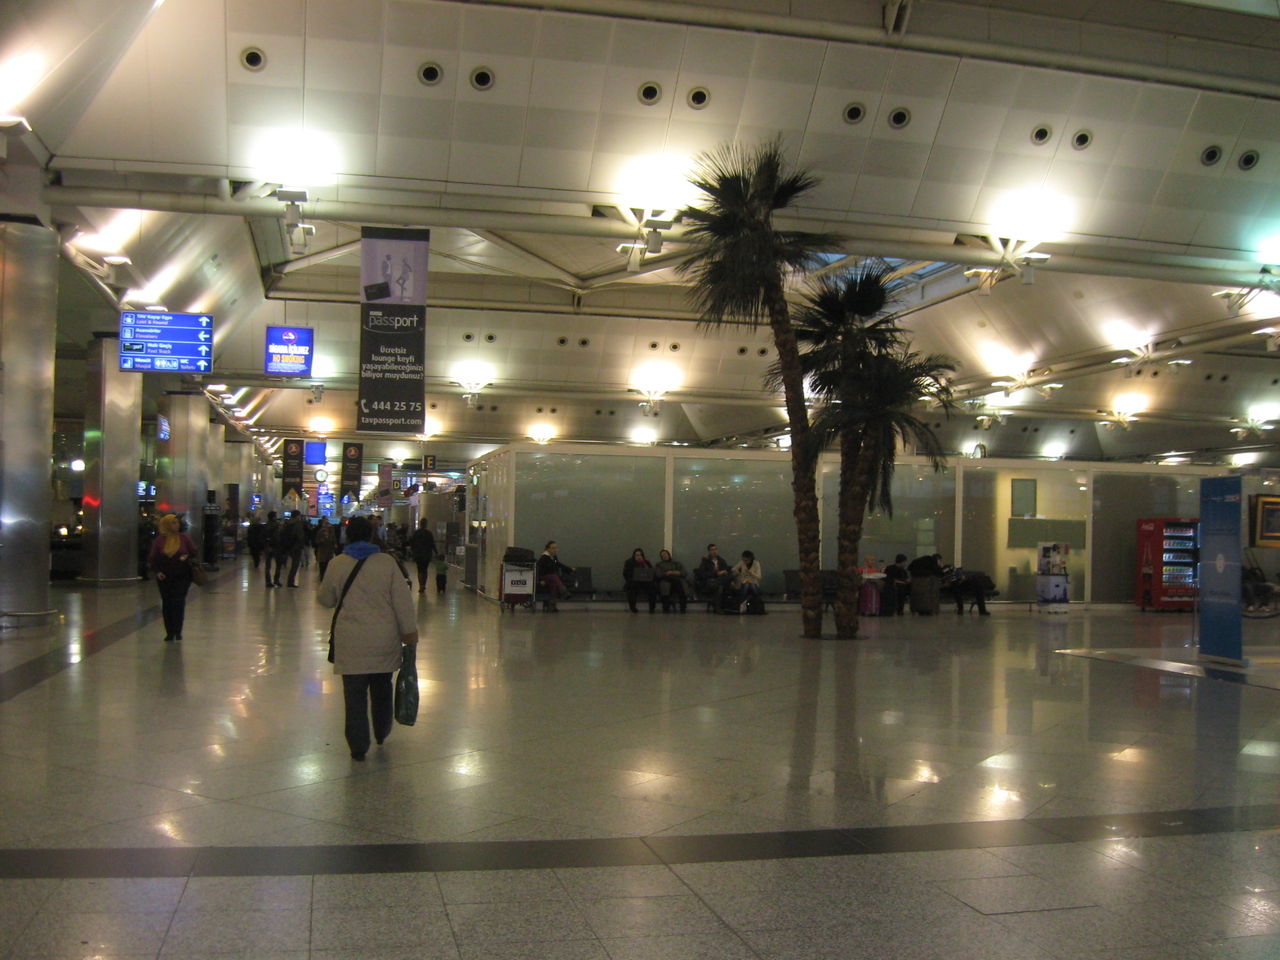 イスタンブール アタテュルク国際空港で発生したテロ事件について Ske48とエアバスa380超絶推し男のblog